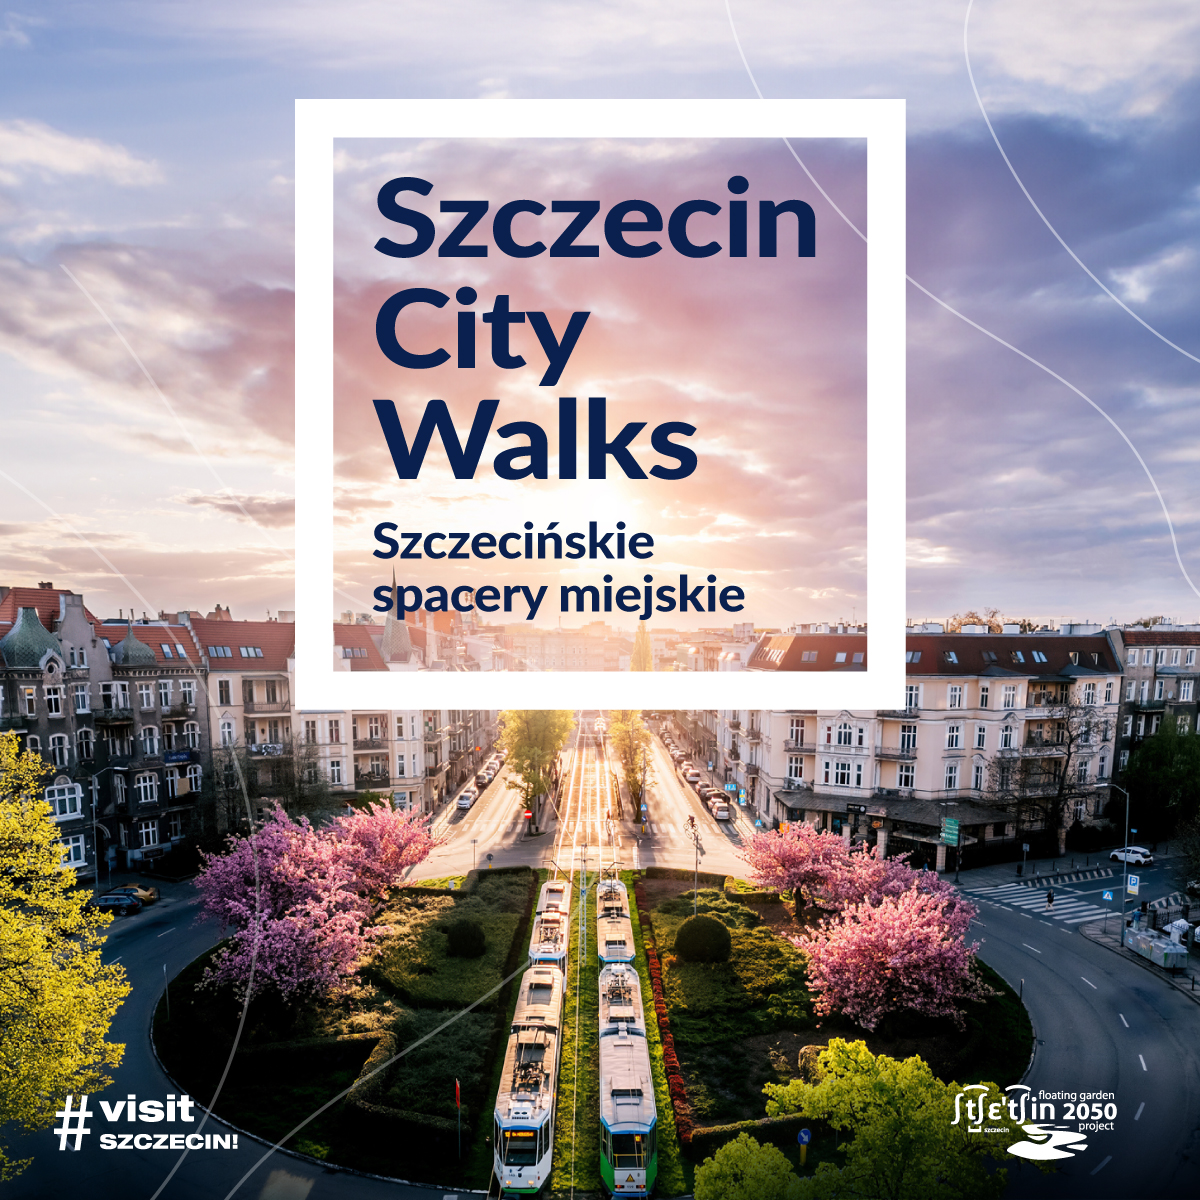 Szczecin City Walks